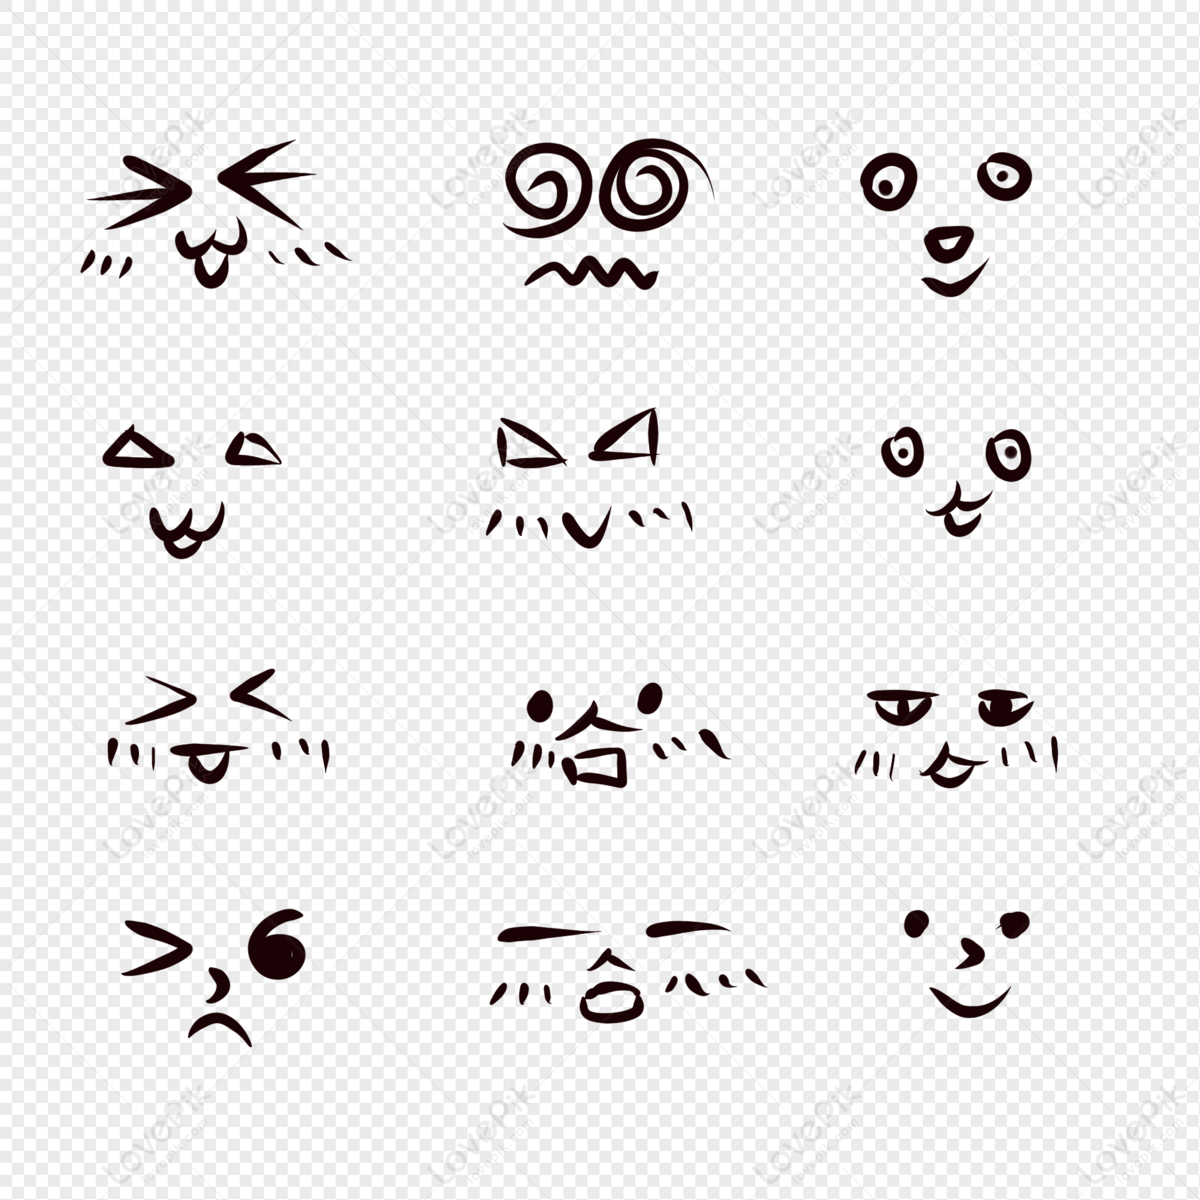 Emoticon là một phần không thể thiếu trong giao tiếp trực tuyến. Tạo ra những biểu tượng cảm xúc độc đáo và truyền cảm hứng để gửi đến bạn bè và người thân của bạn.